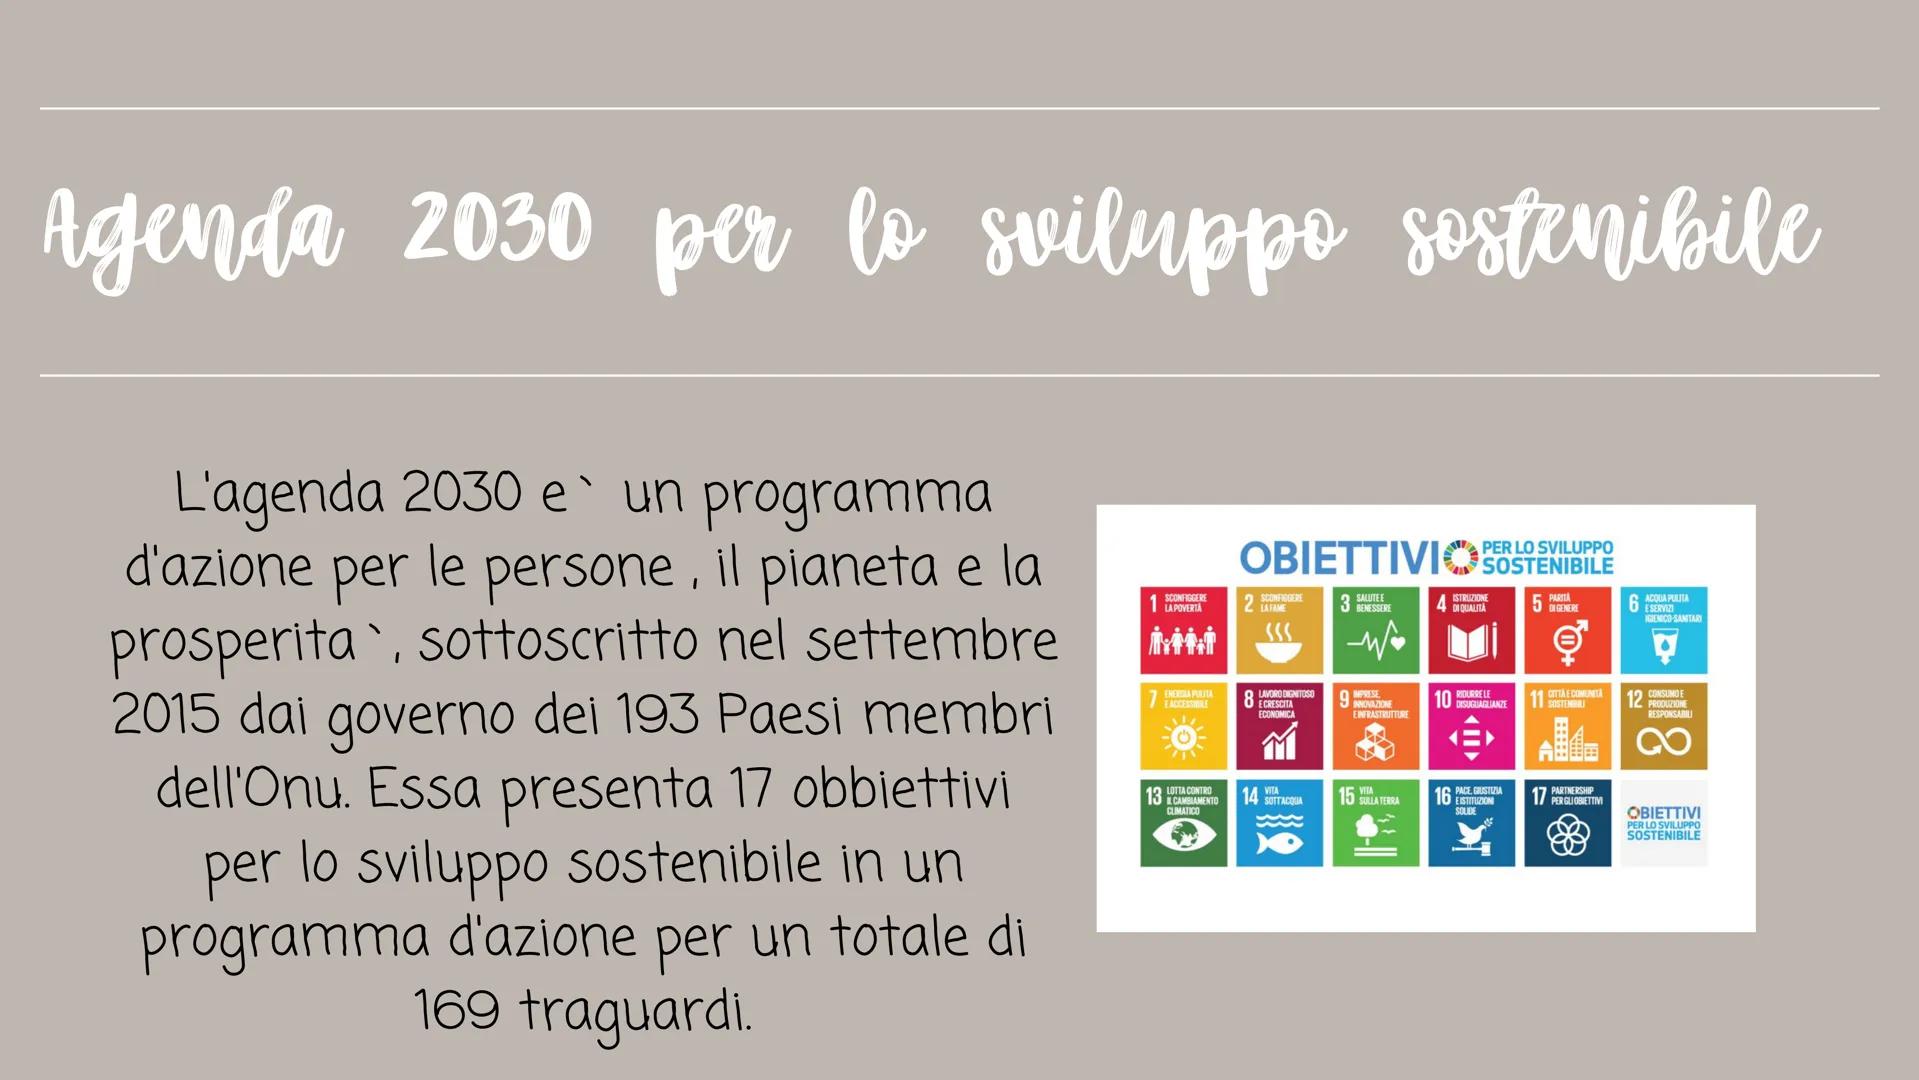 
<p>L'Agenda 2030 per lo sviluppo sostenibile, sottoscritta nel settembre 2015 dai 193 Paesi membri dell'Onu, presenta 17 obiettivi per lo s